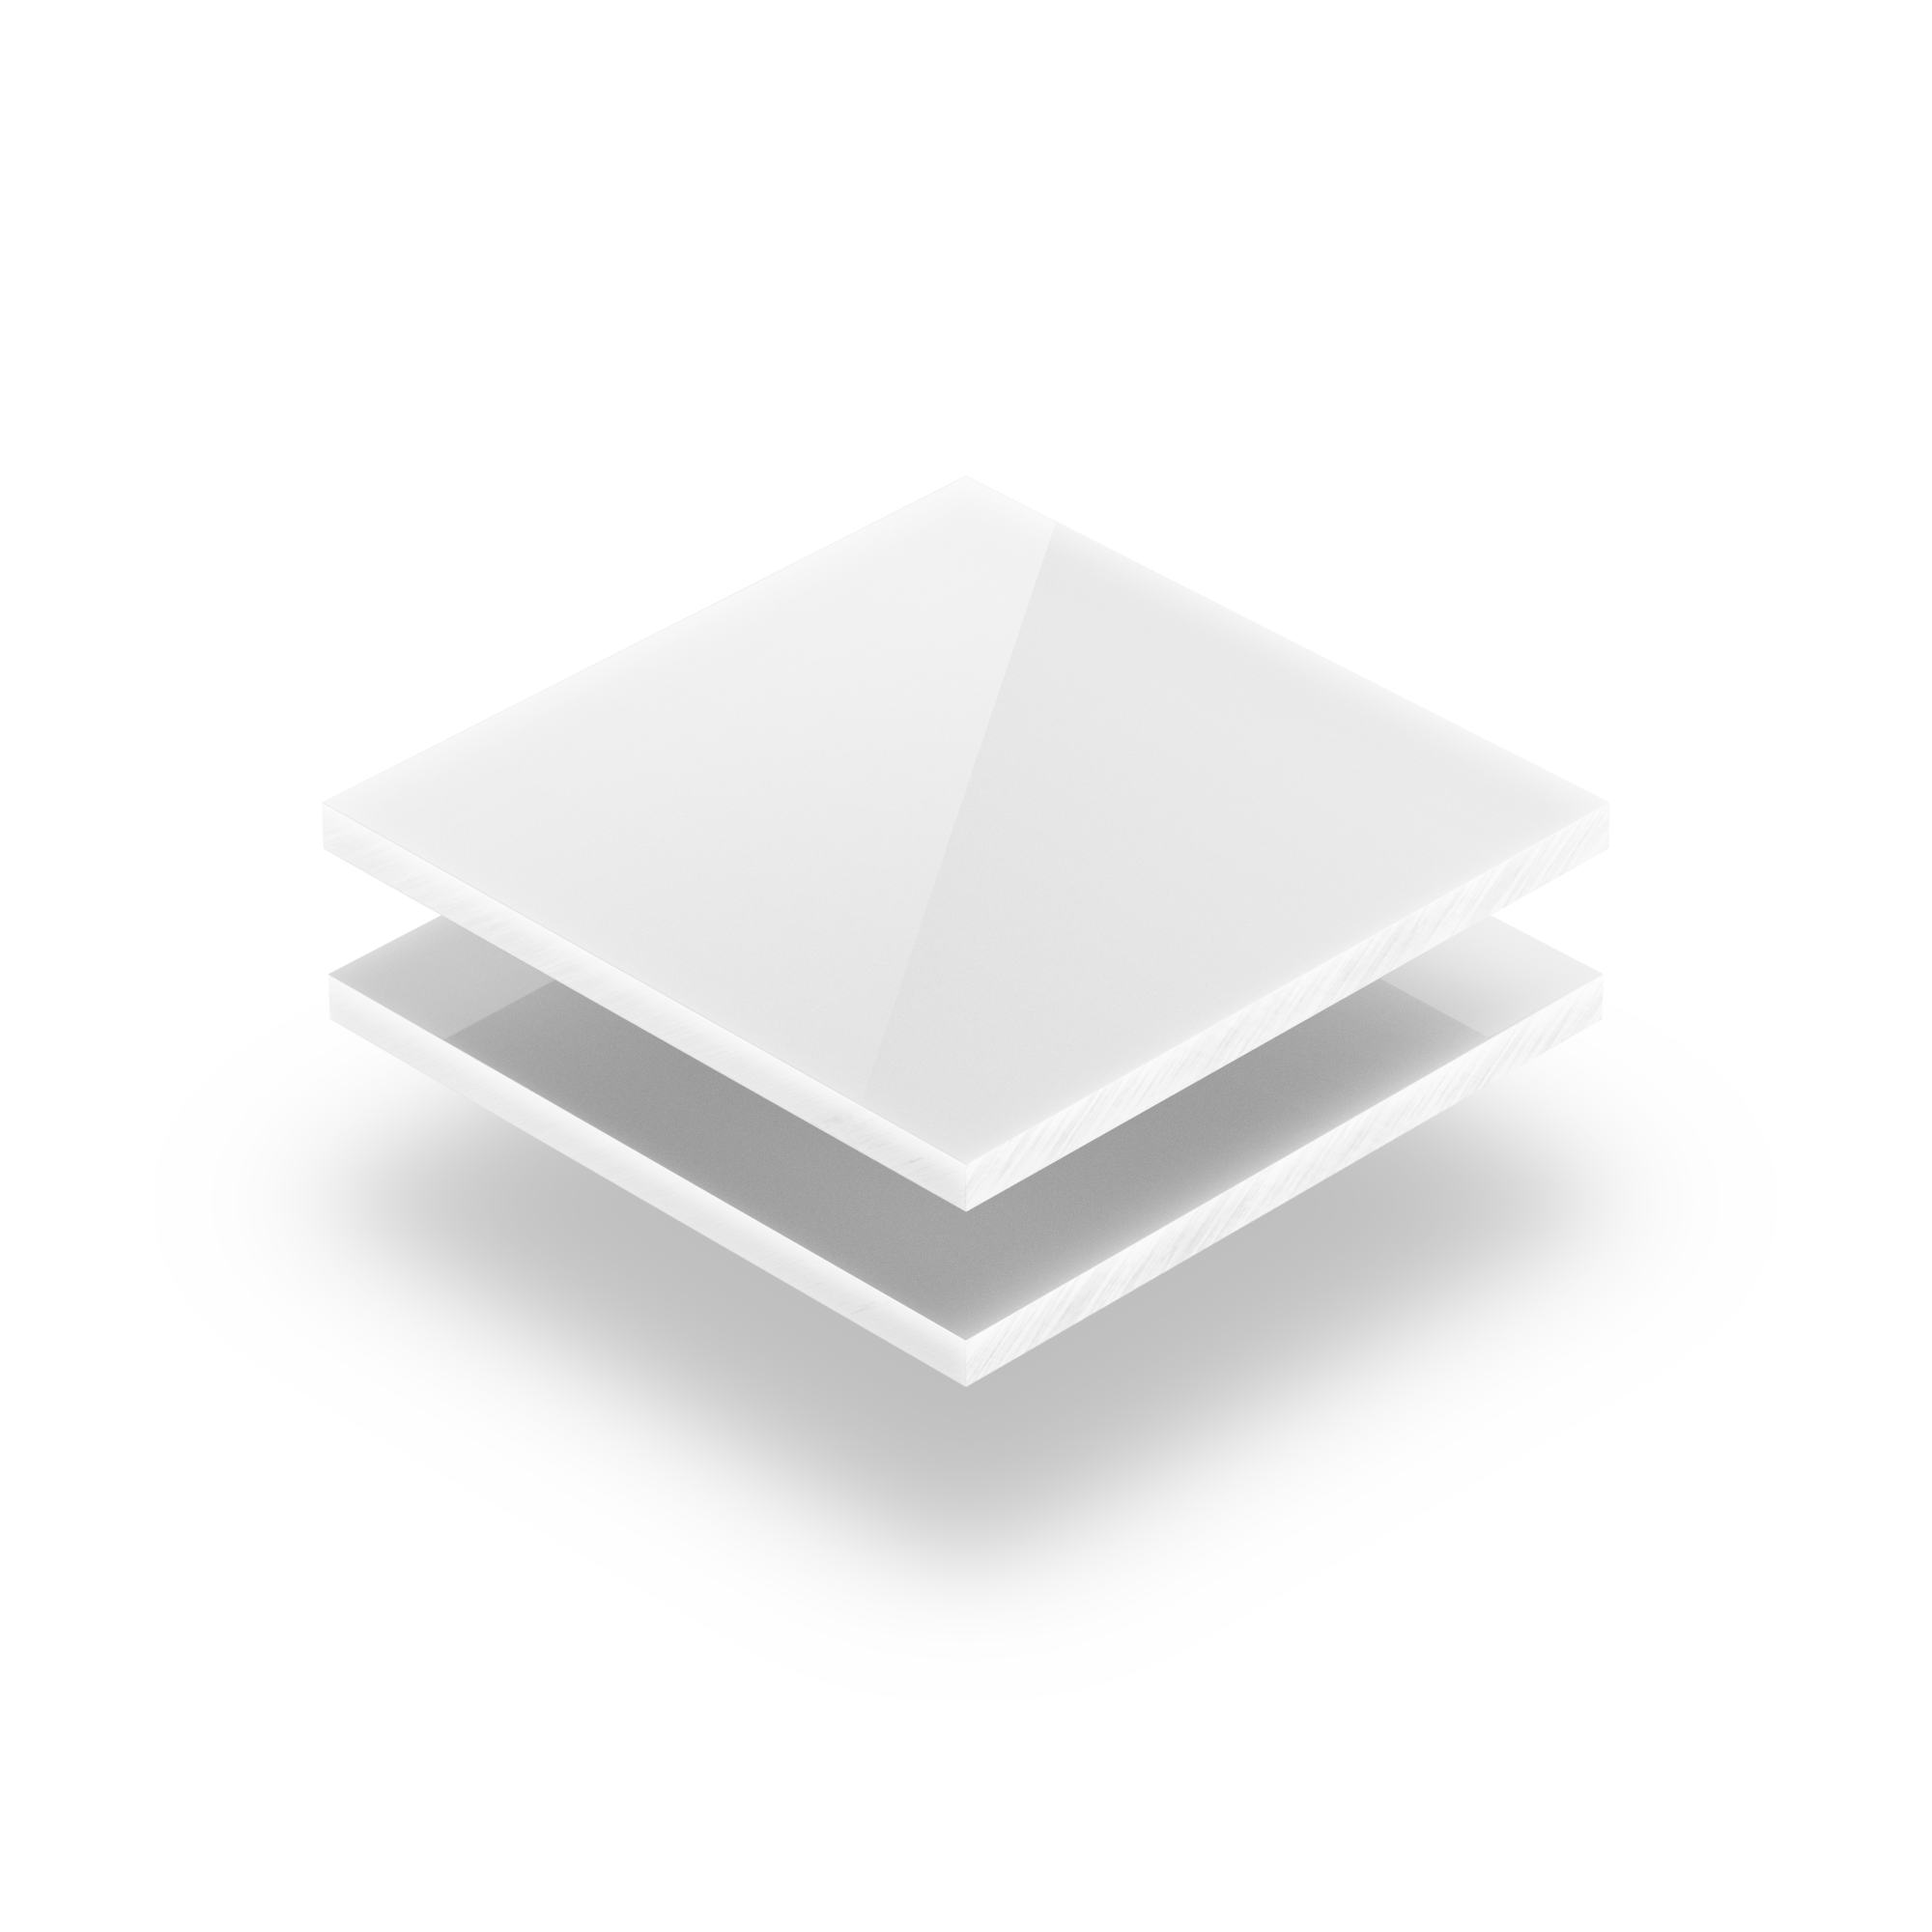 Plaque en Polycarbonate 600 x 500 x 3 mm verre opale avec une transmission lumineuse 30% Coupe opalin 